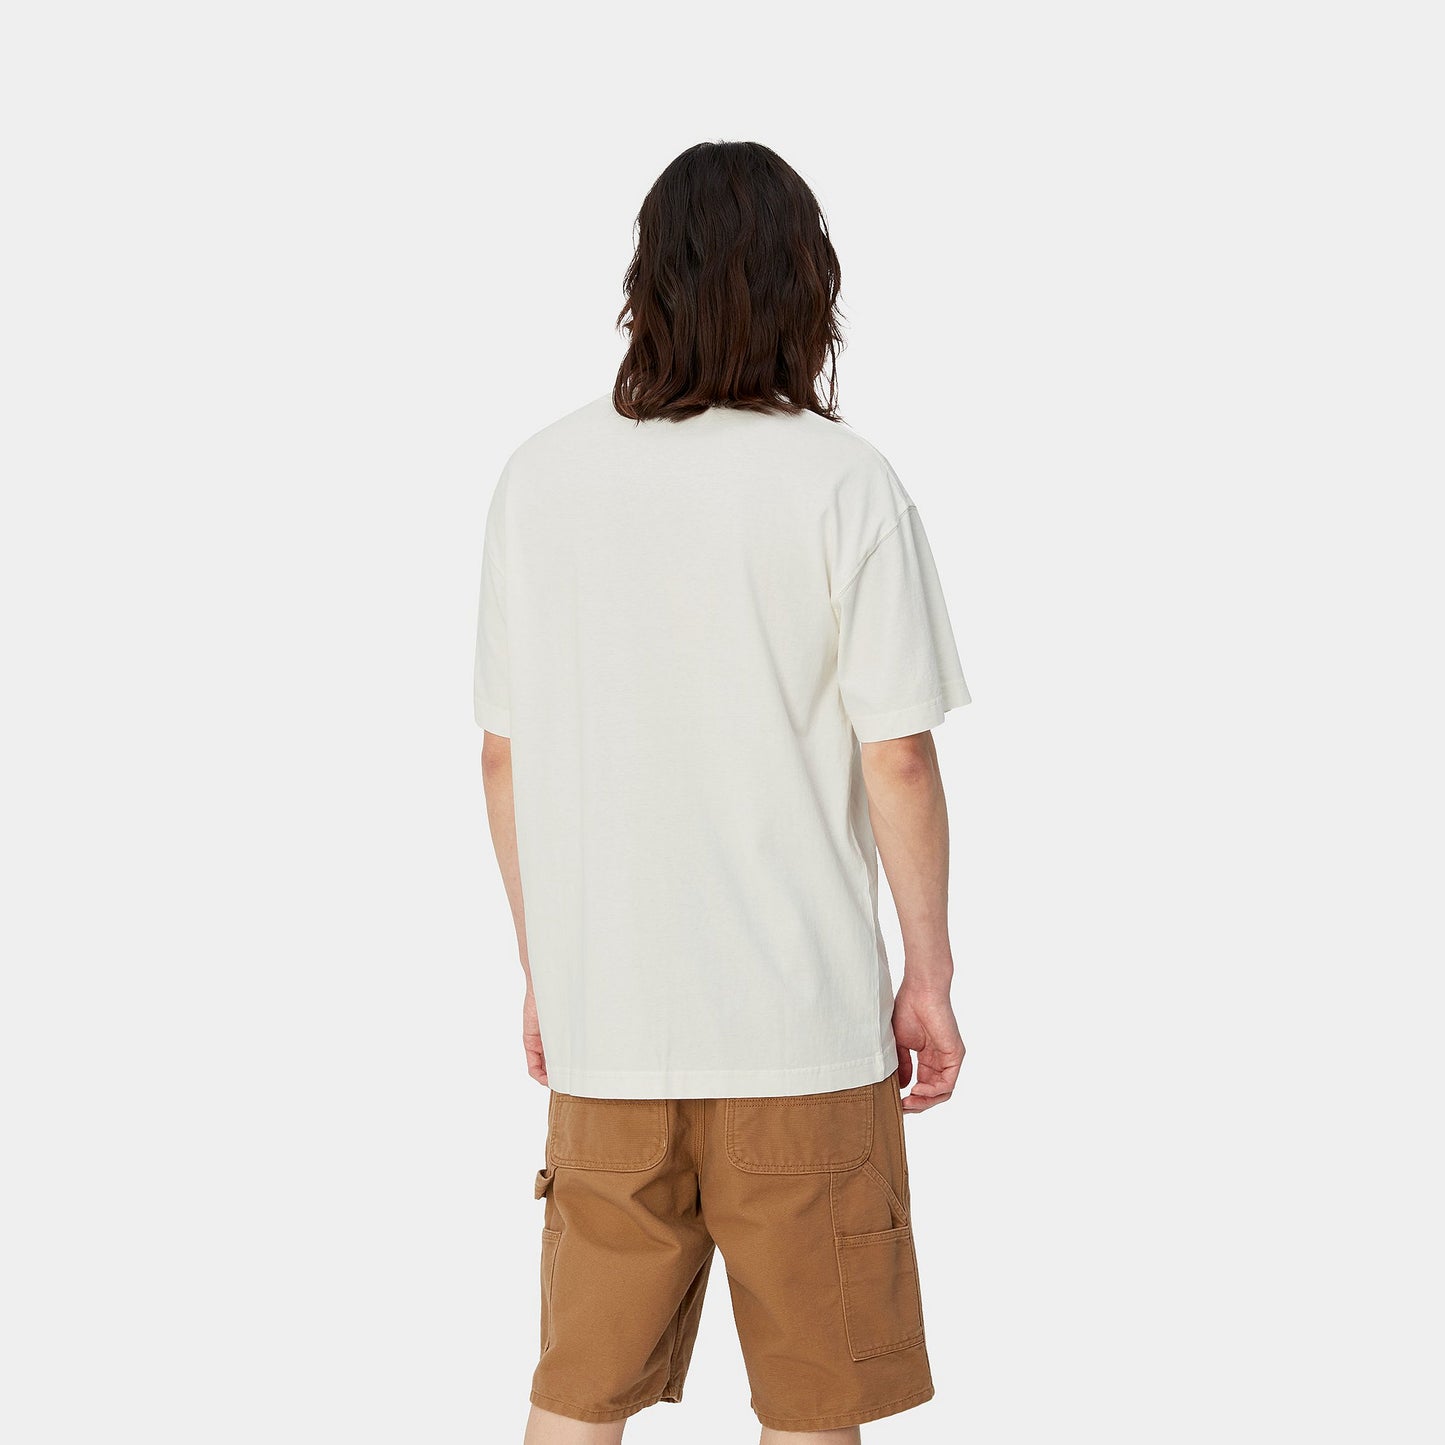 
                  
                    Nelson T-Shirt - Wax (Garment Dyed)
                  
                